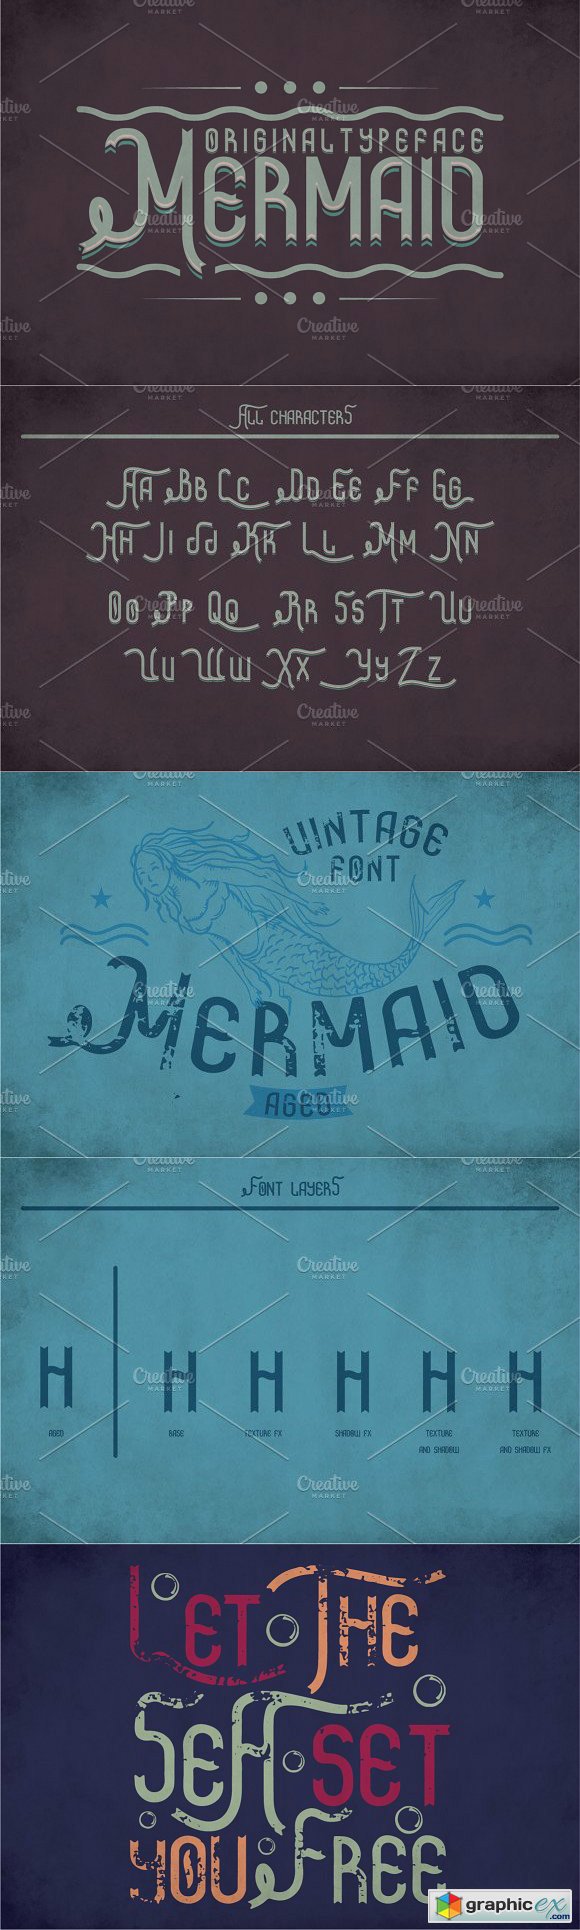 Mermaid Vintage Label Typeface